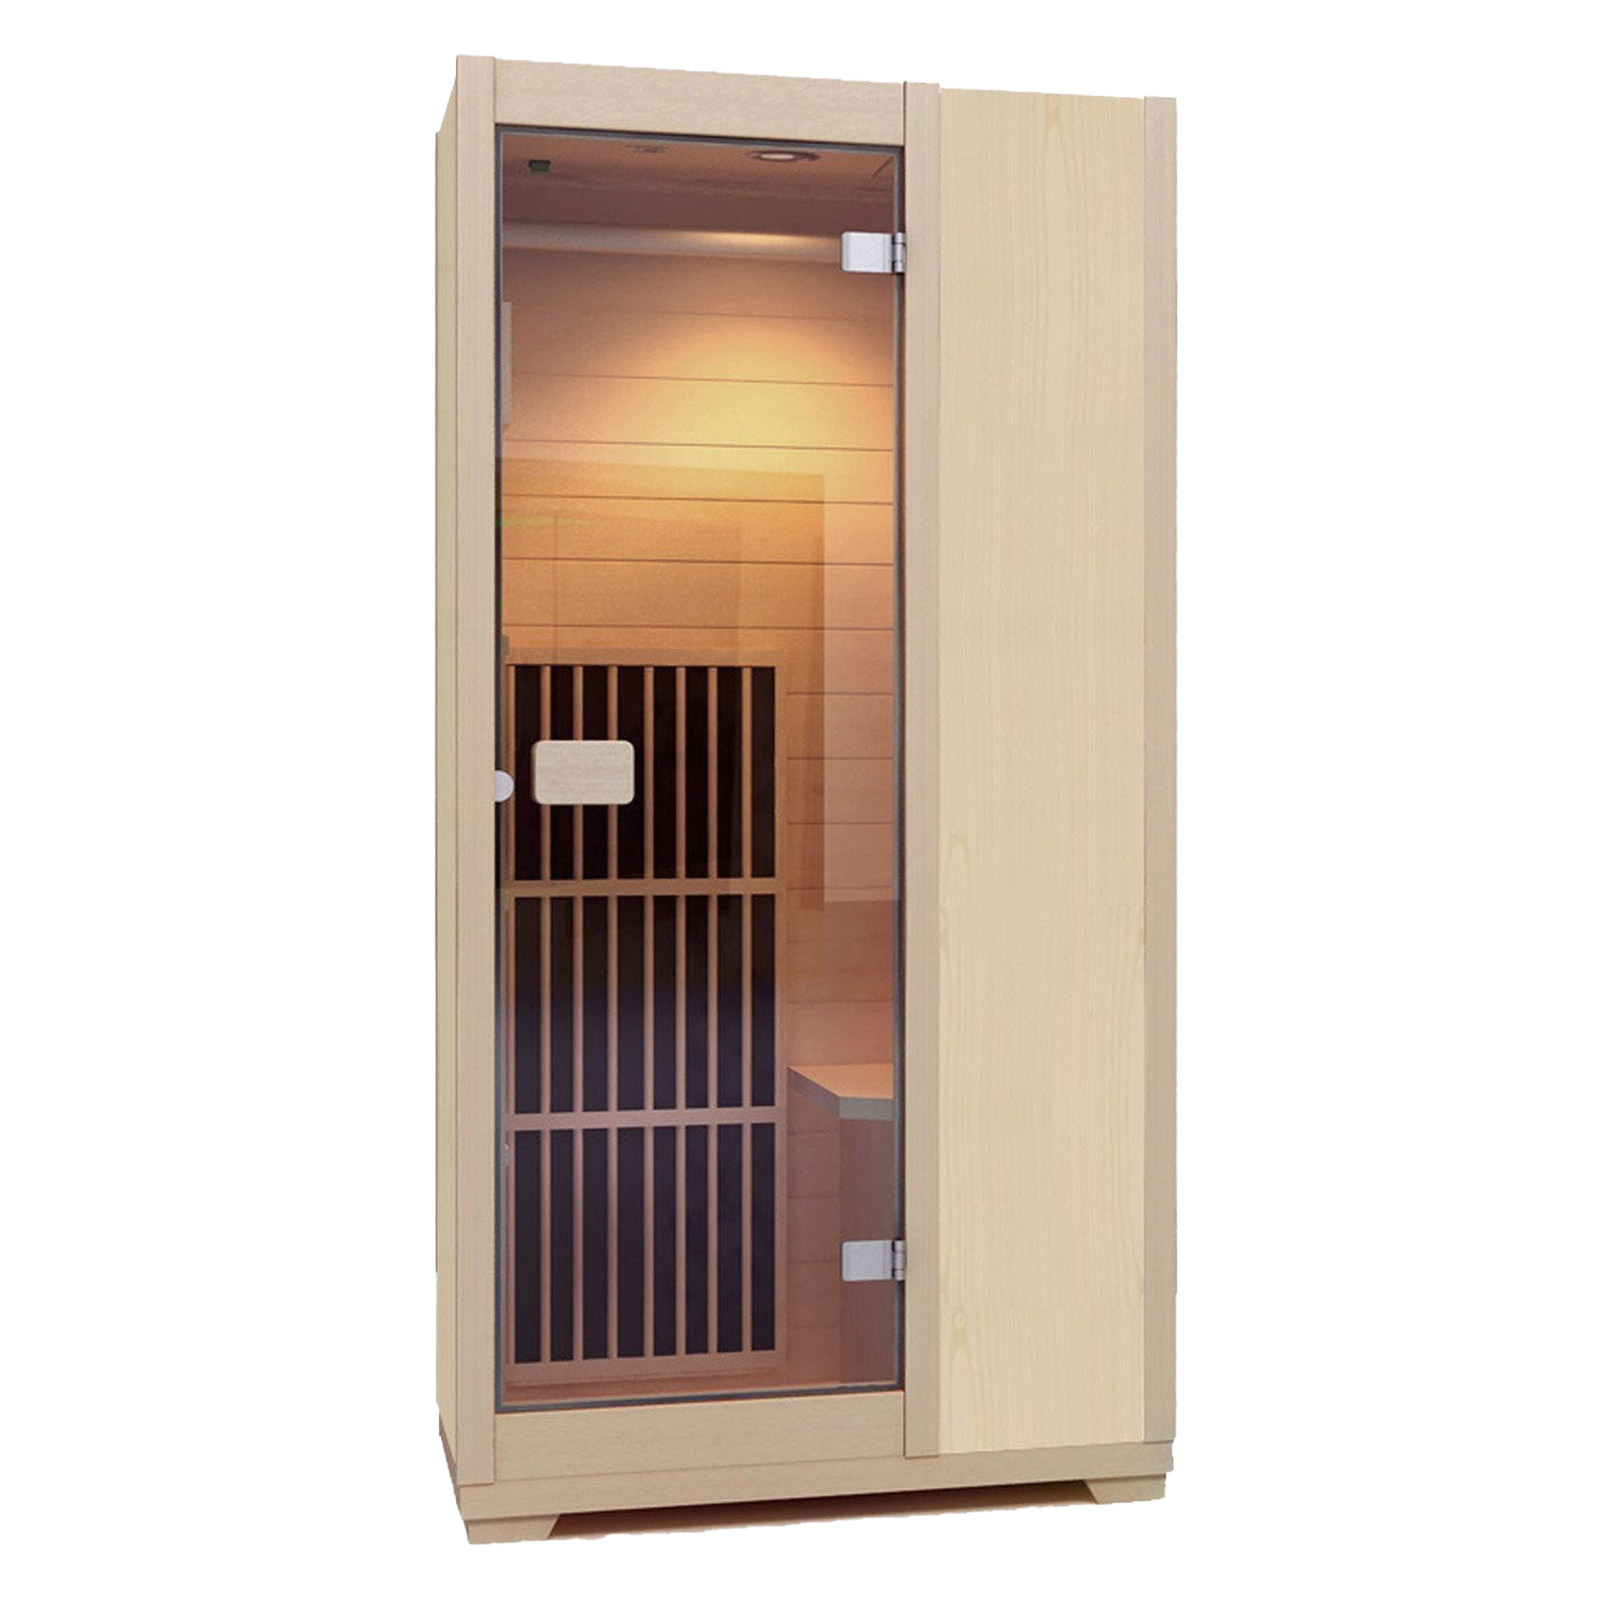 Zen Ferninfrarot-Sauna für 1 Person - Natur